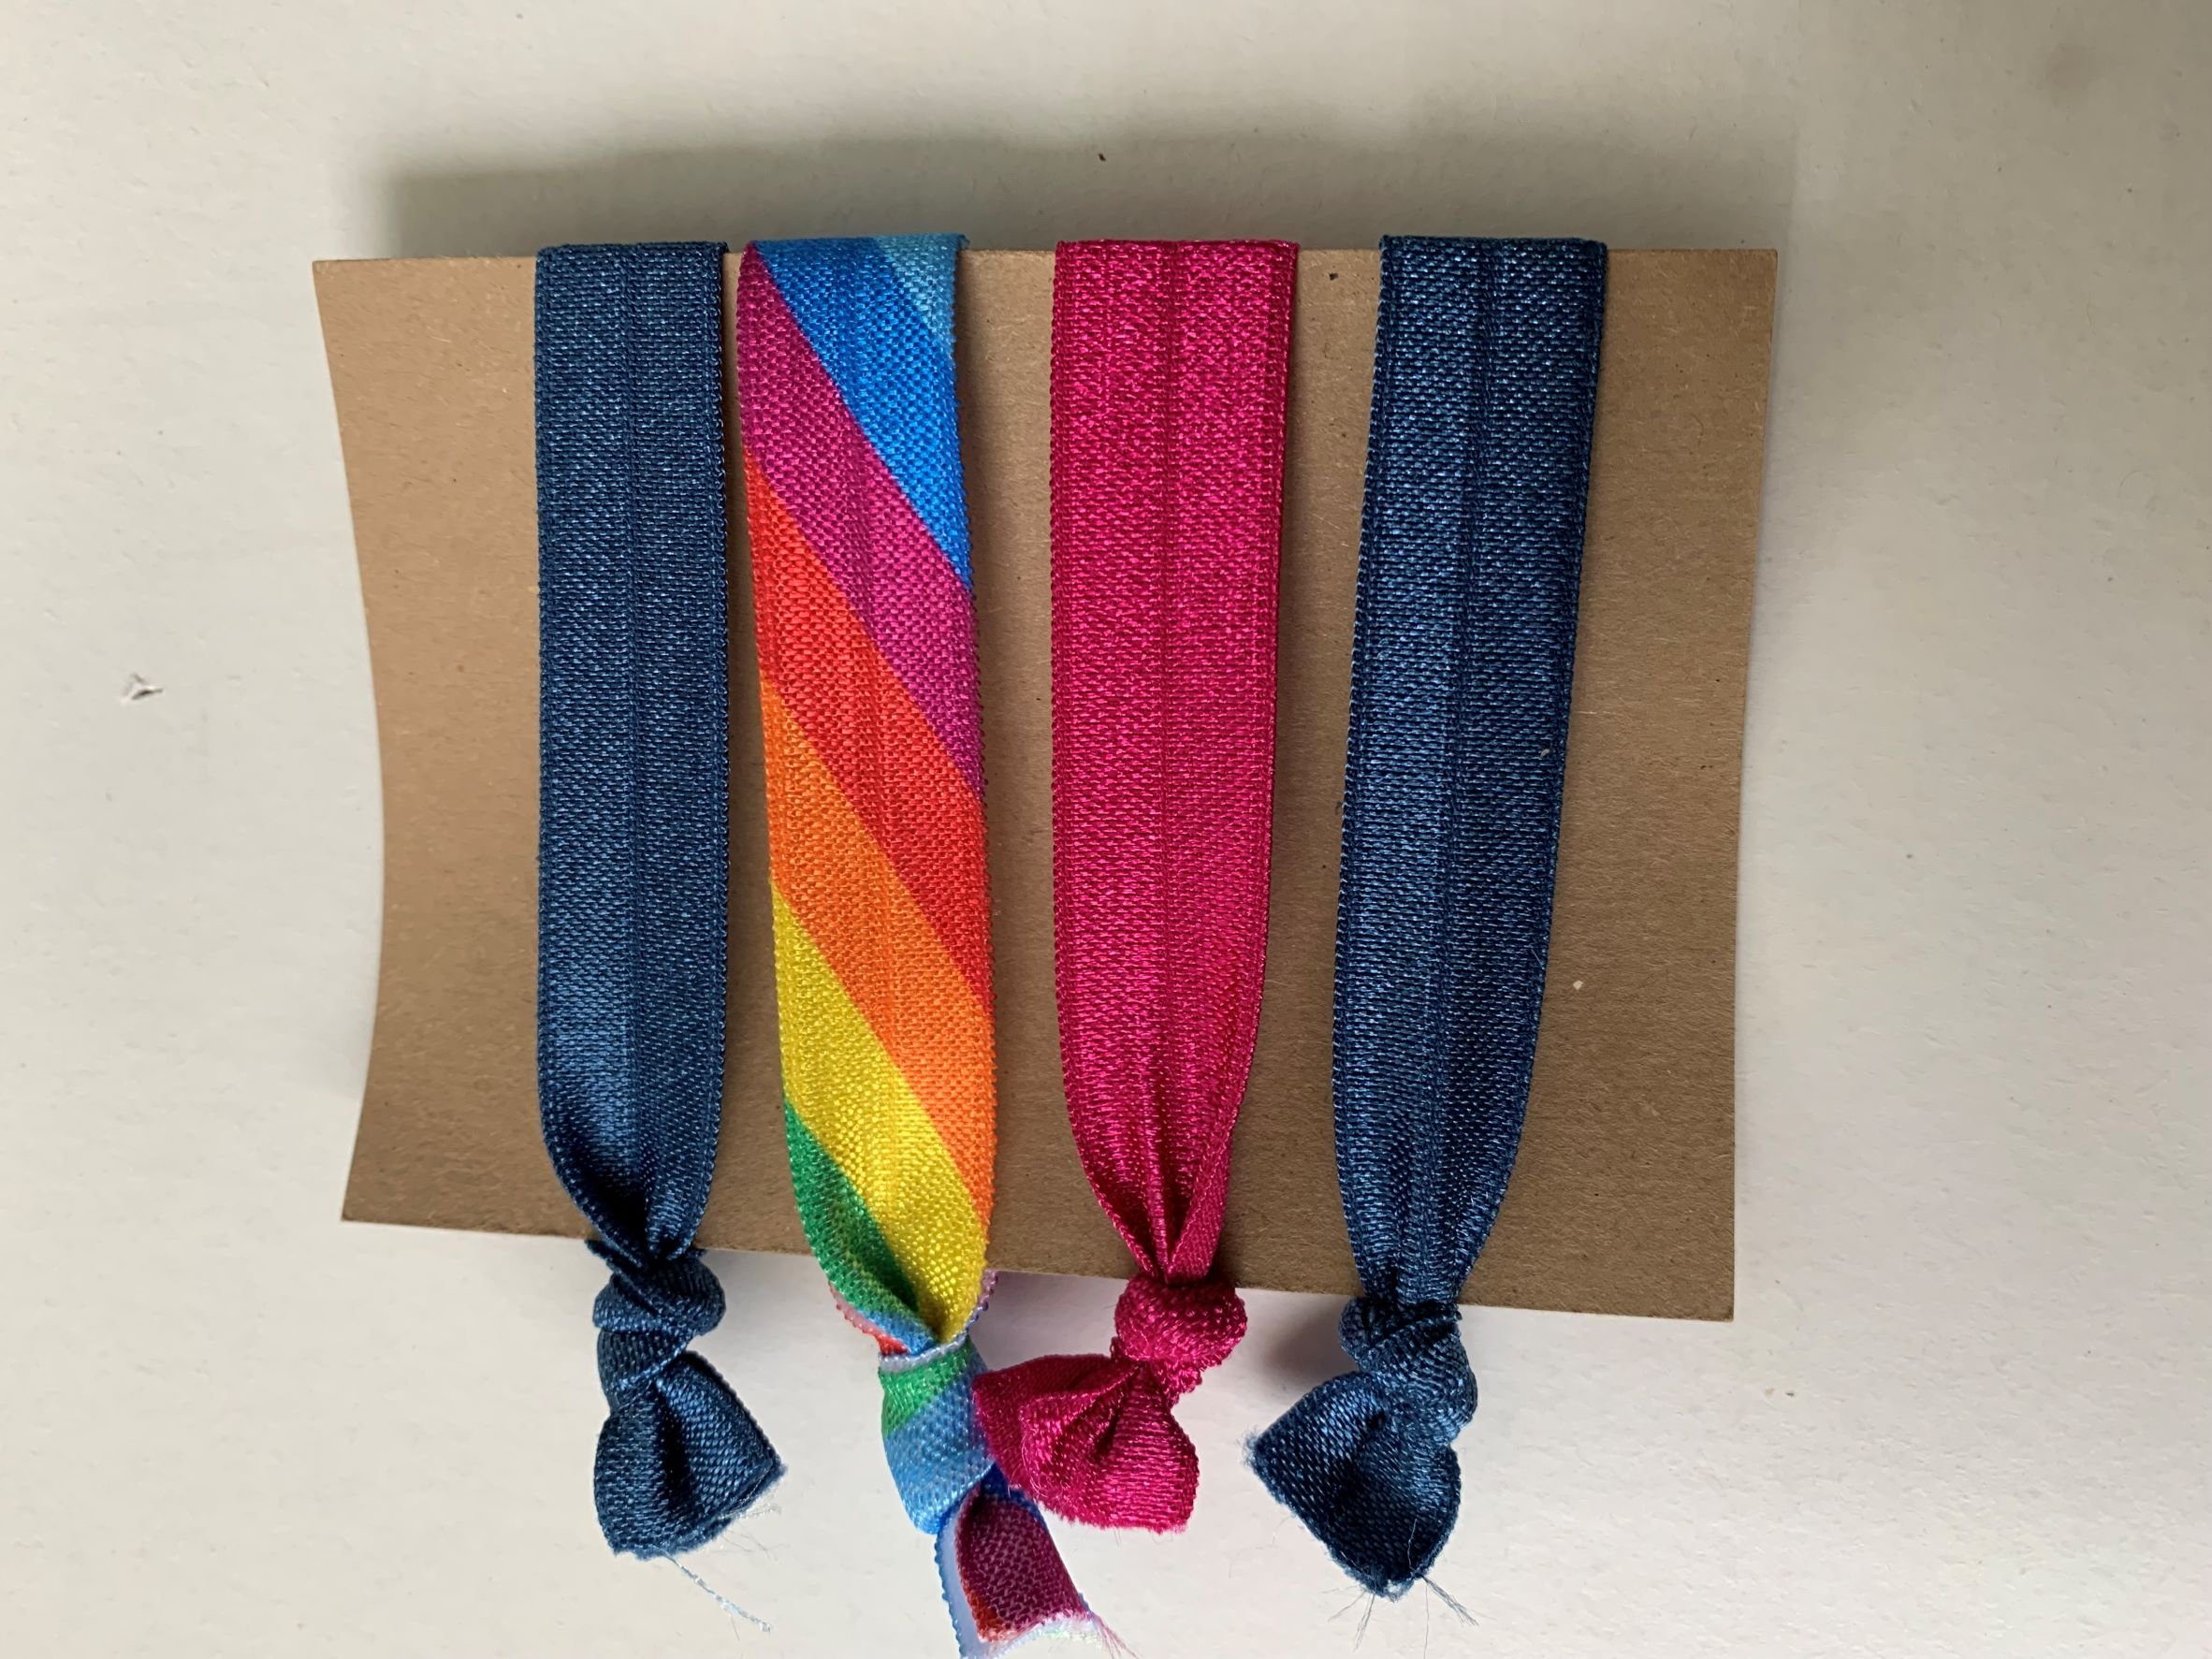 LK Trend & Style Zopfband elastisches Haarband oder Armband, für die Festival Frisur, cooles Armband, Haarband das sich als Armband einsetzen lässt, ein Trend Regenbogen blau